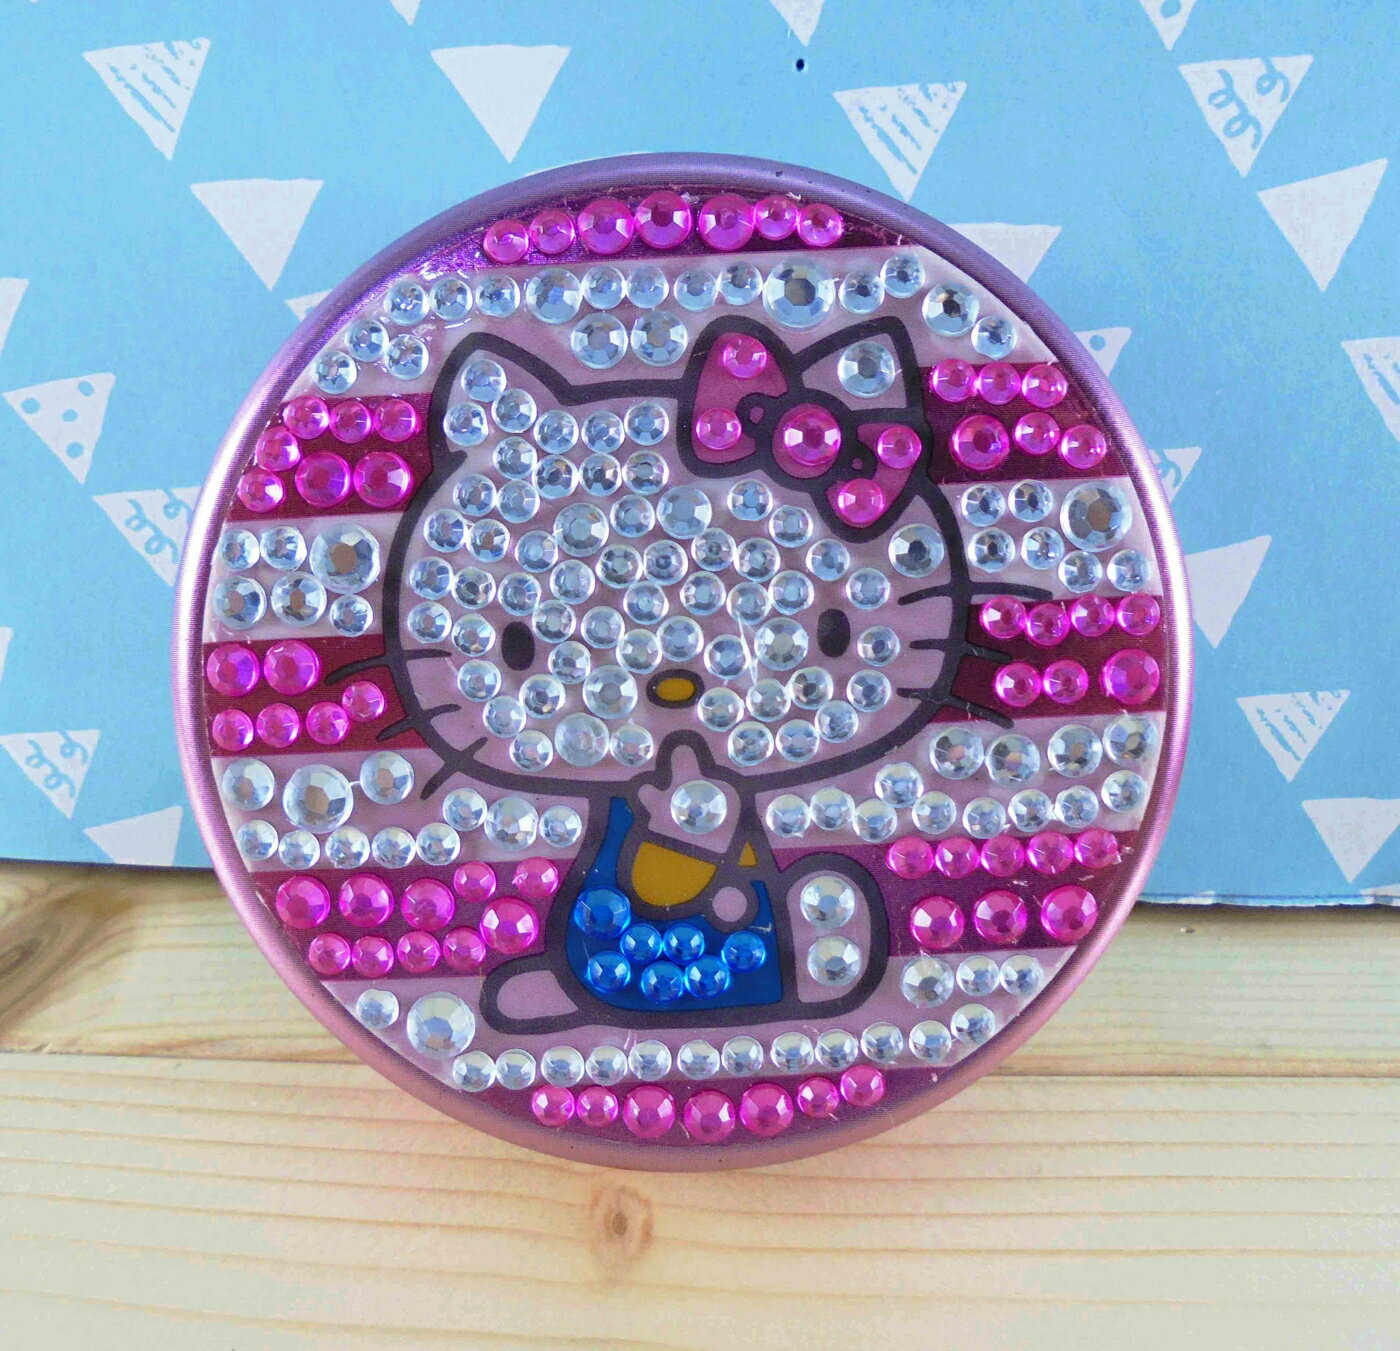 【震撼精品百貨】Hello Kitty 凱蒂貓 KITTY圓鐵盒-粉鑽 震撼日式精品百貨